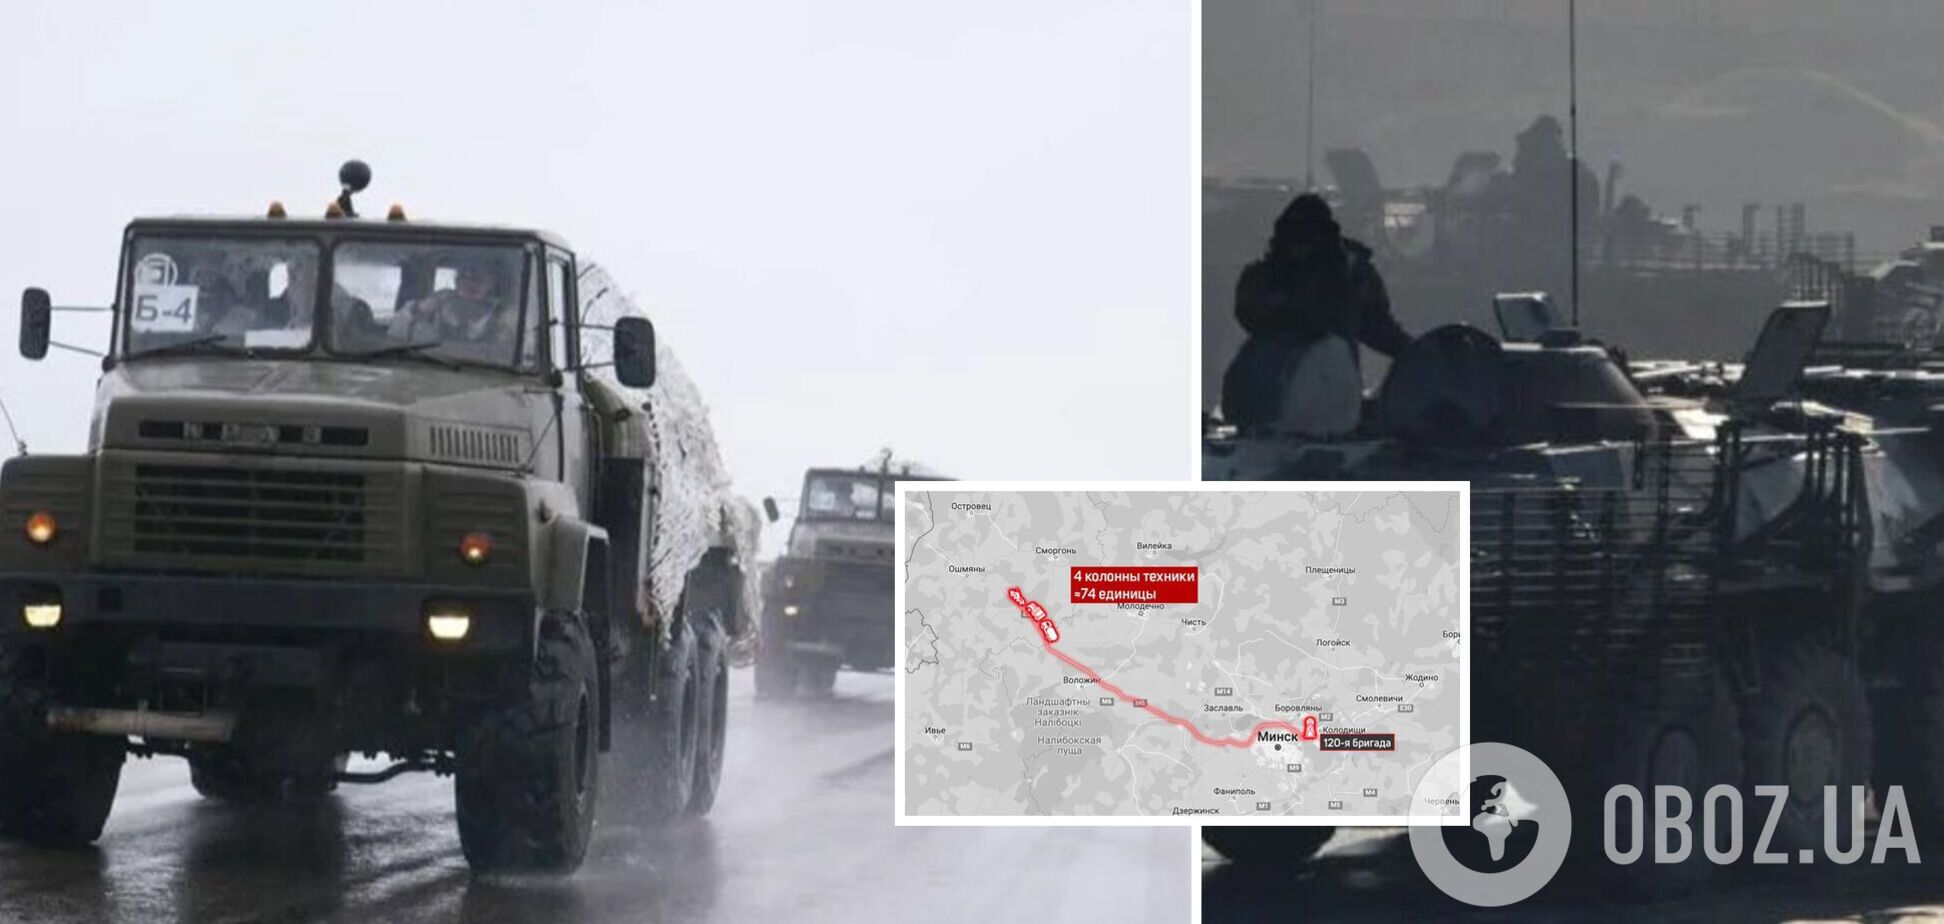 Заявили про перевірку 'боєготовності': з Мінська до кордону з Литвою вирушили чотири колони з військовою технікою – ЗМІ 